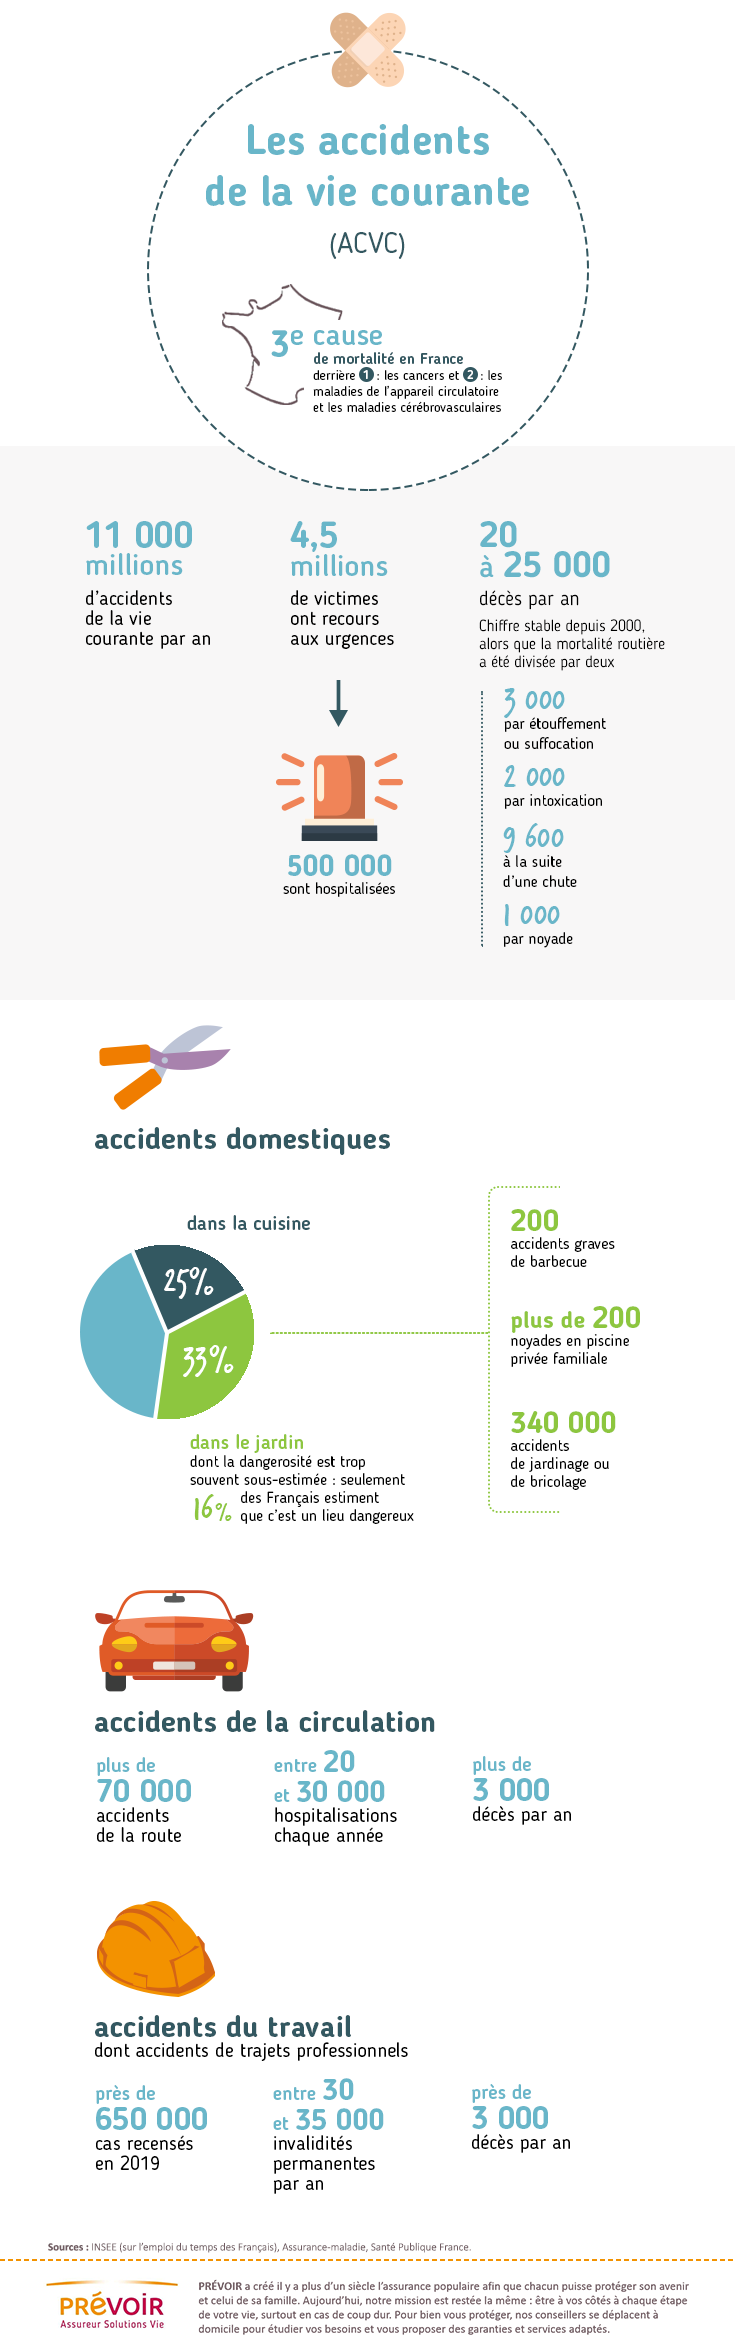 infographie accidents de la vie courante